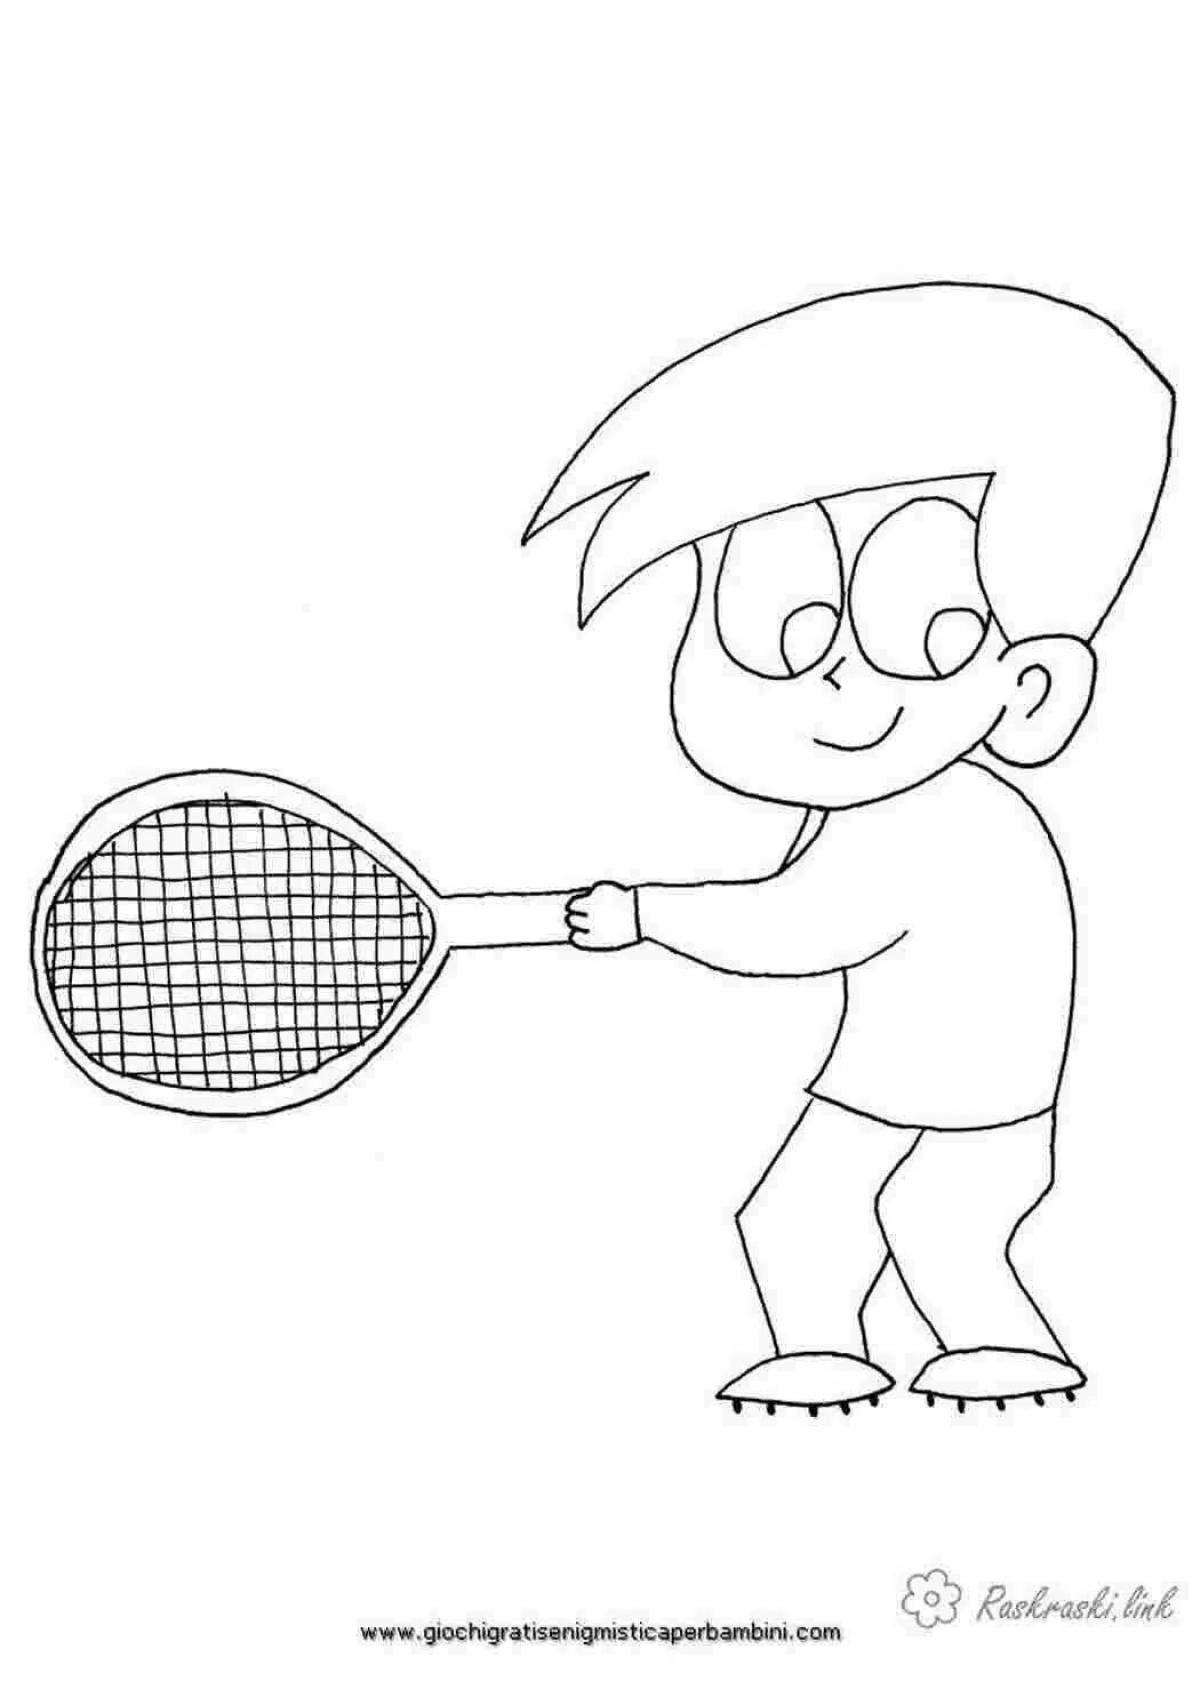 Креативная теннисная раскраска для детей